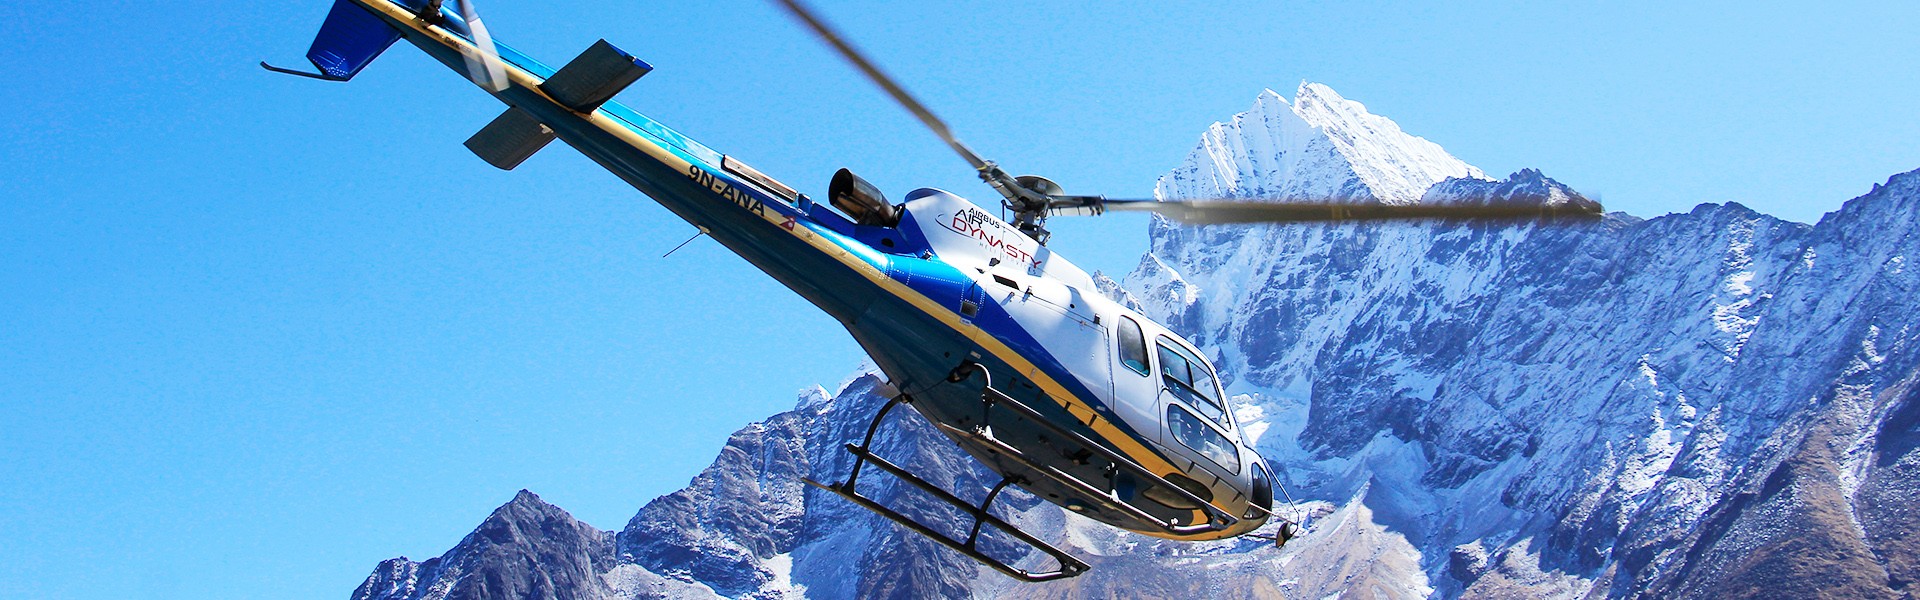 Everest Base Camp Helicopter Back Trek